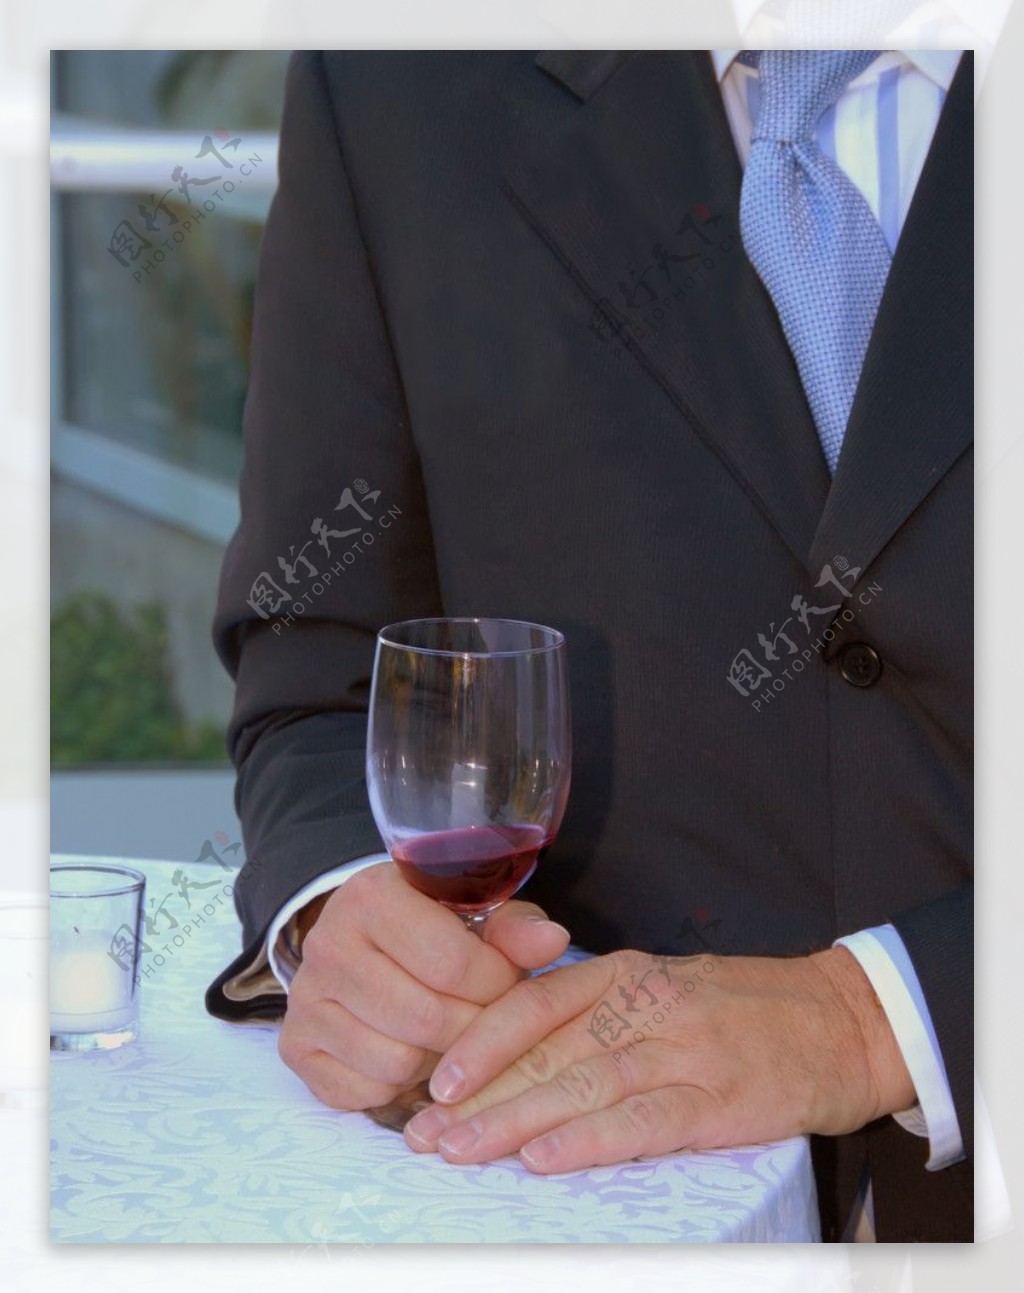 拿红酒的男人图片